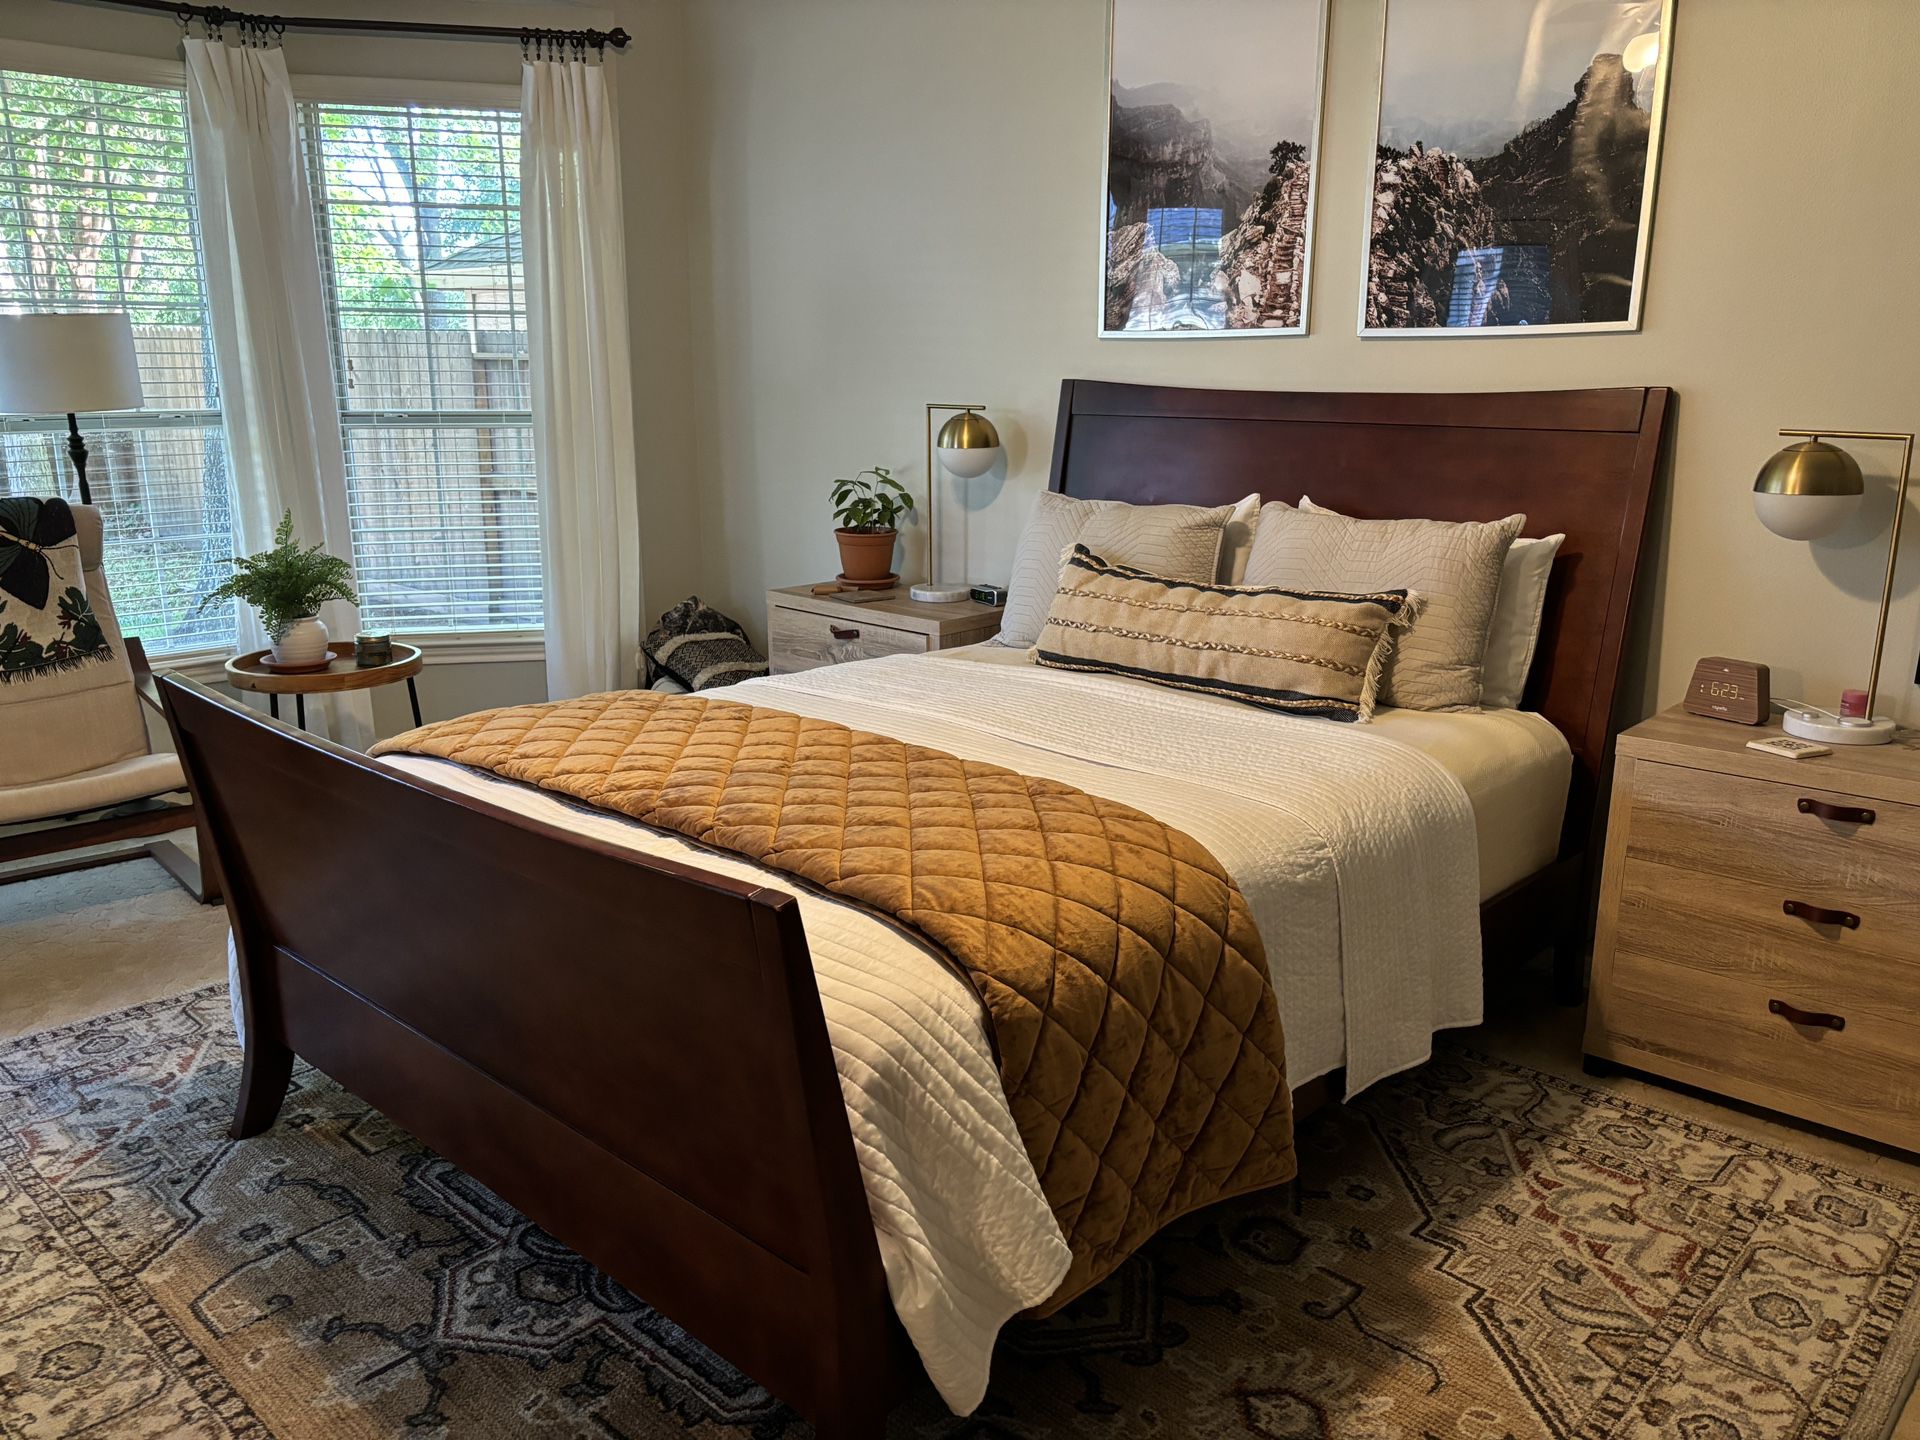 Queen Solid Wood Bedroom Set - Bed, Dresser, Armoire